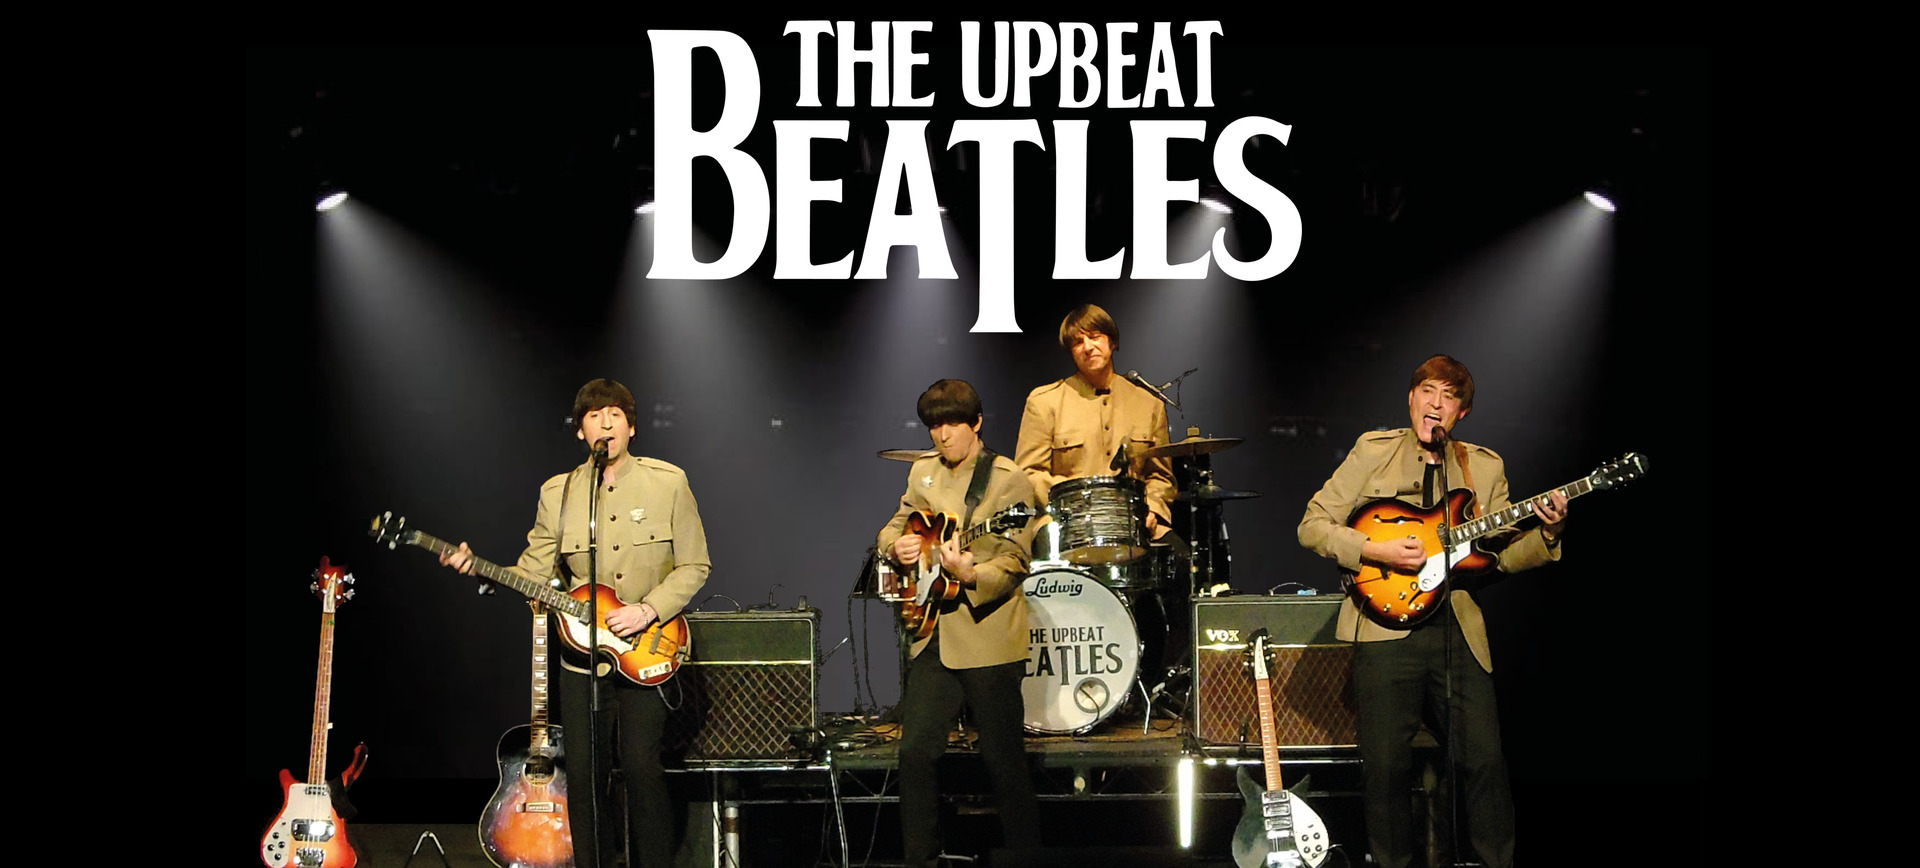 The Upbeat Beatles, Blackpool, England, United Kingdom